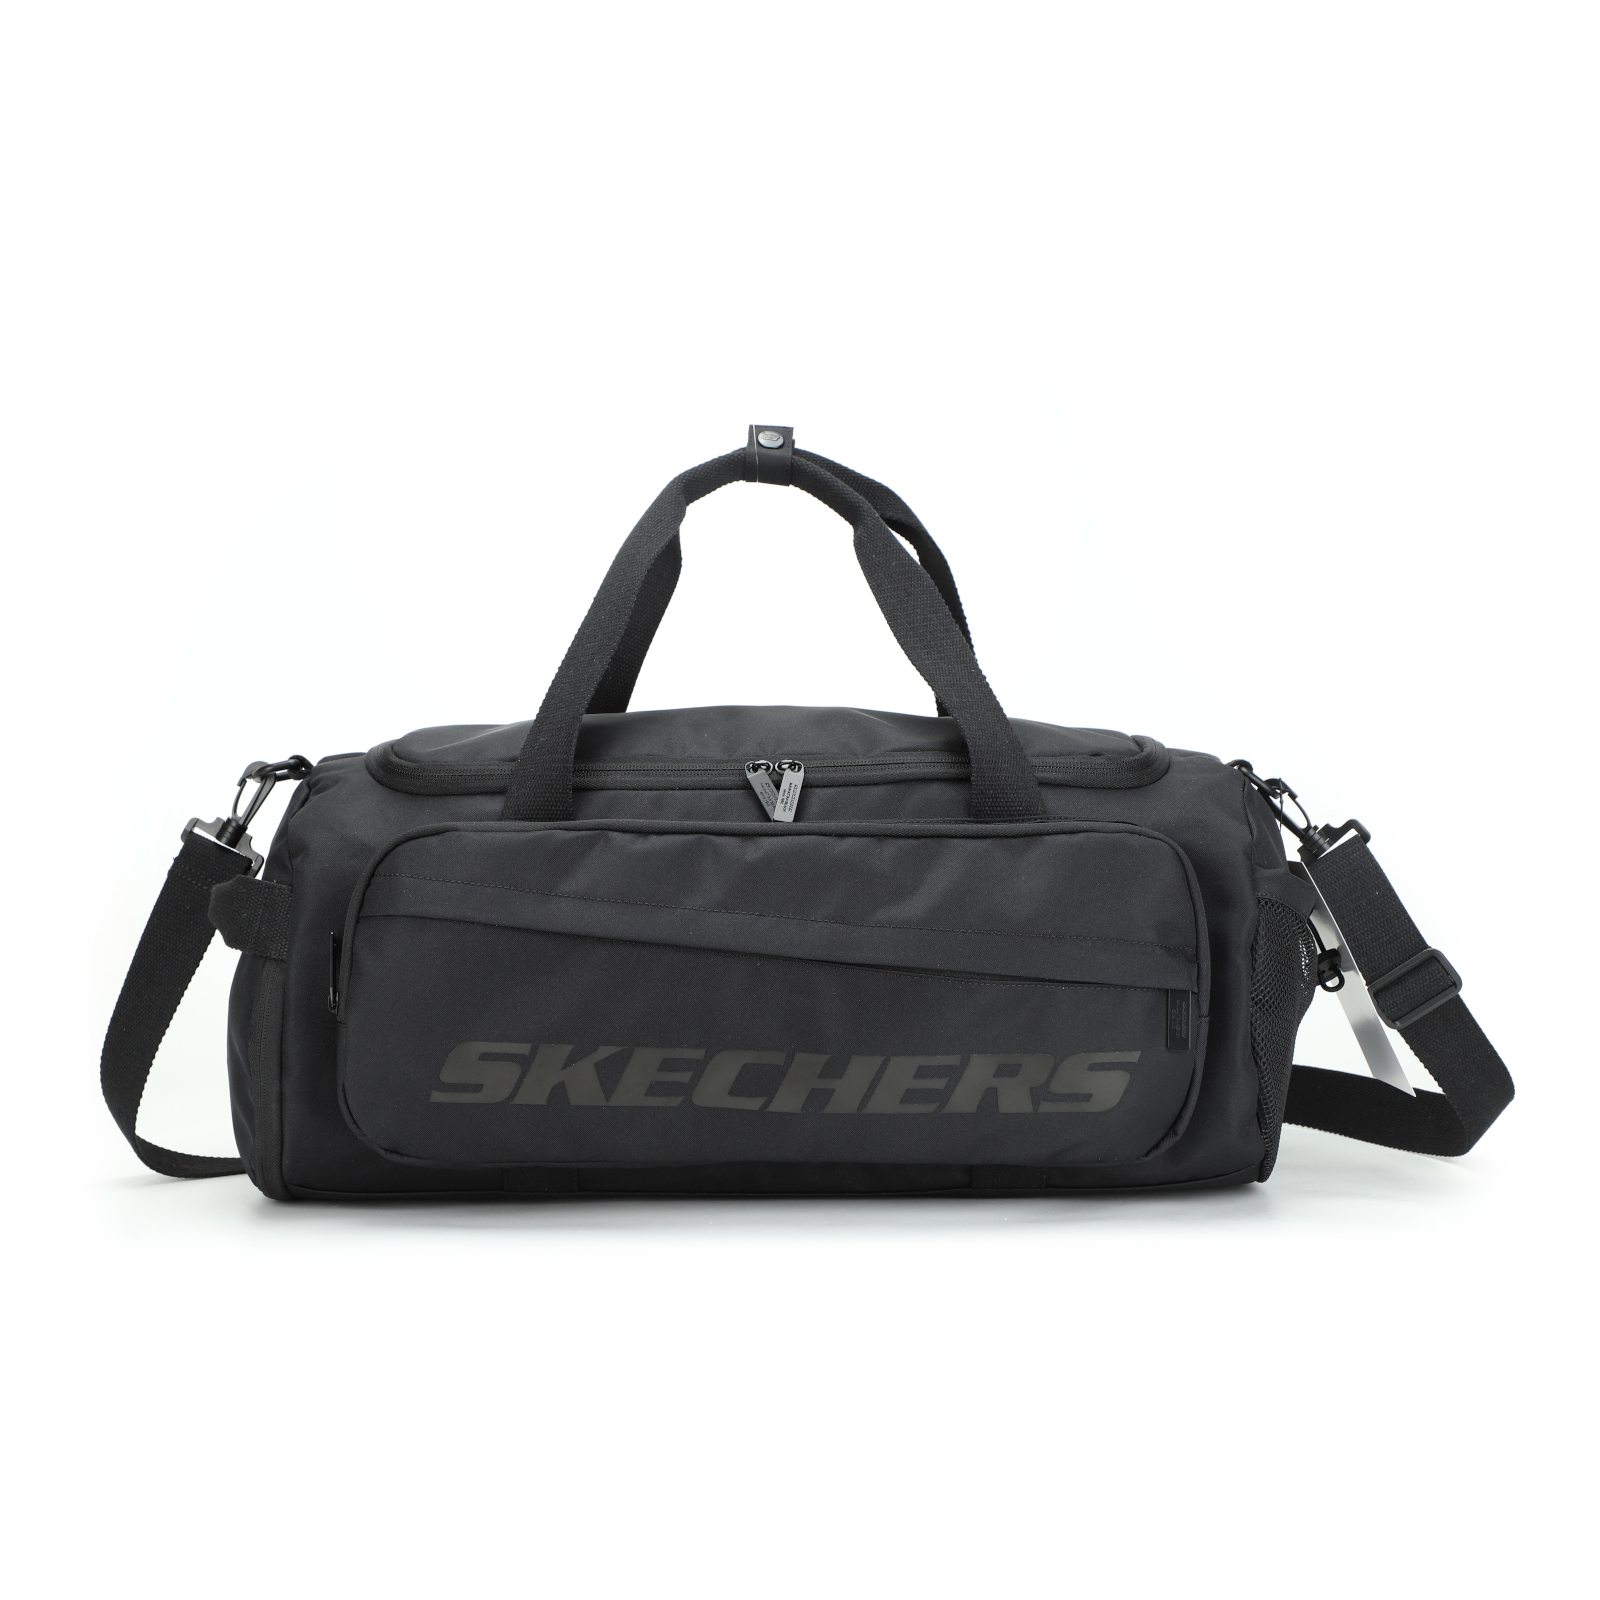 Saco Skechers Arizona 30 Litros - negro - 